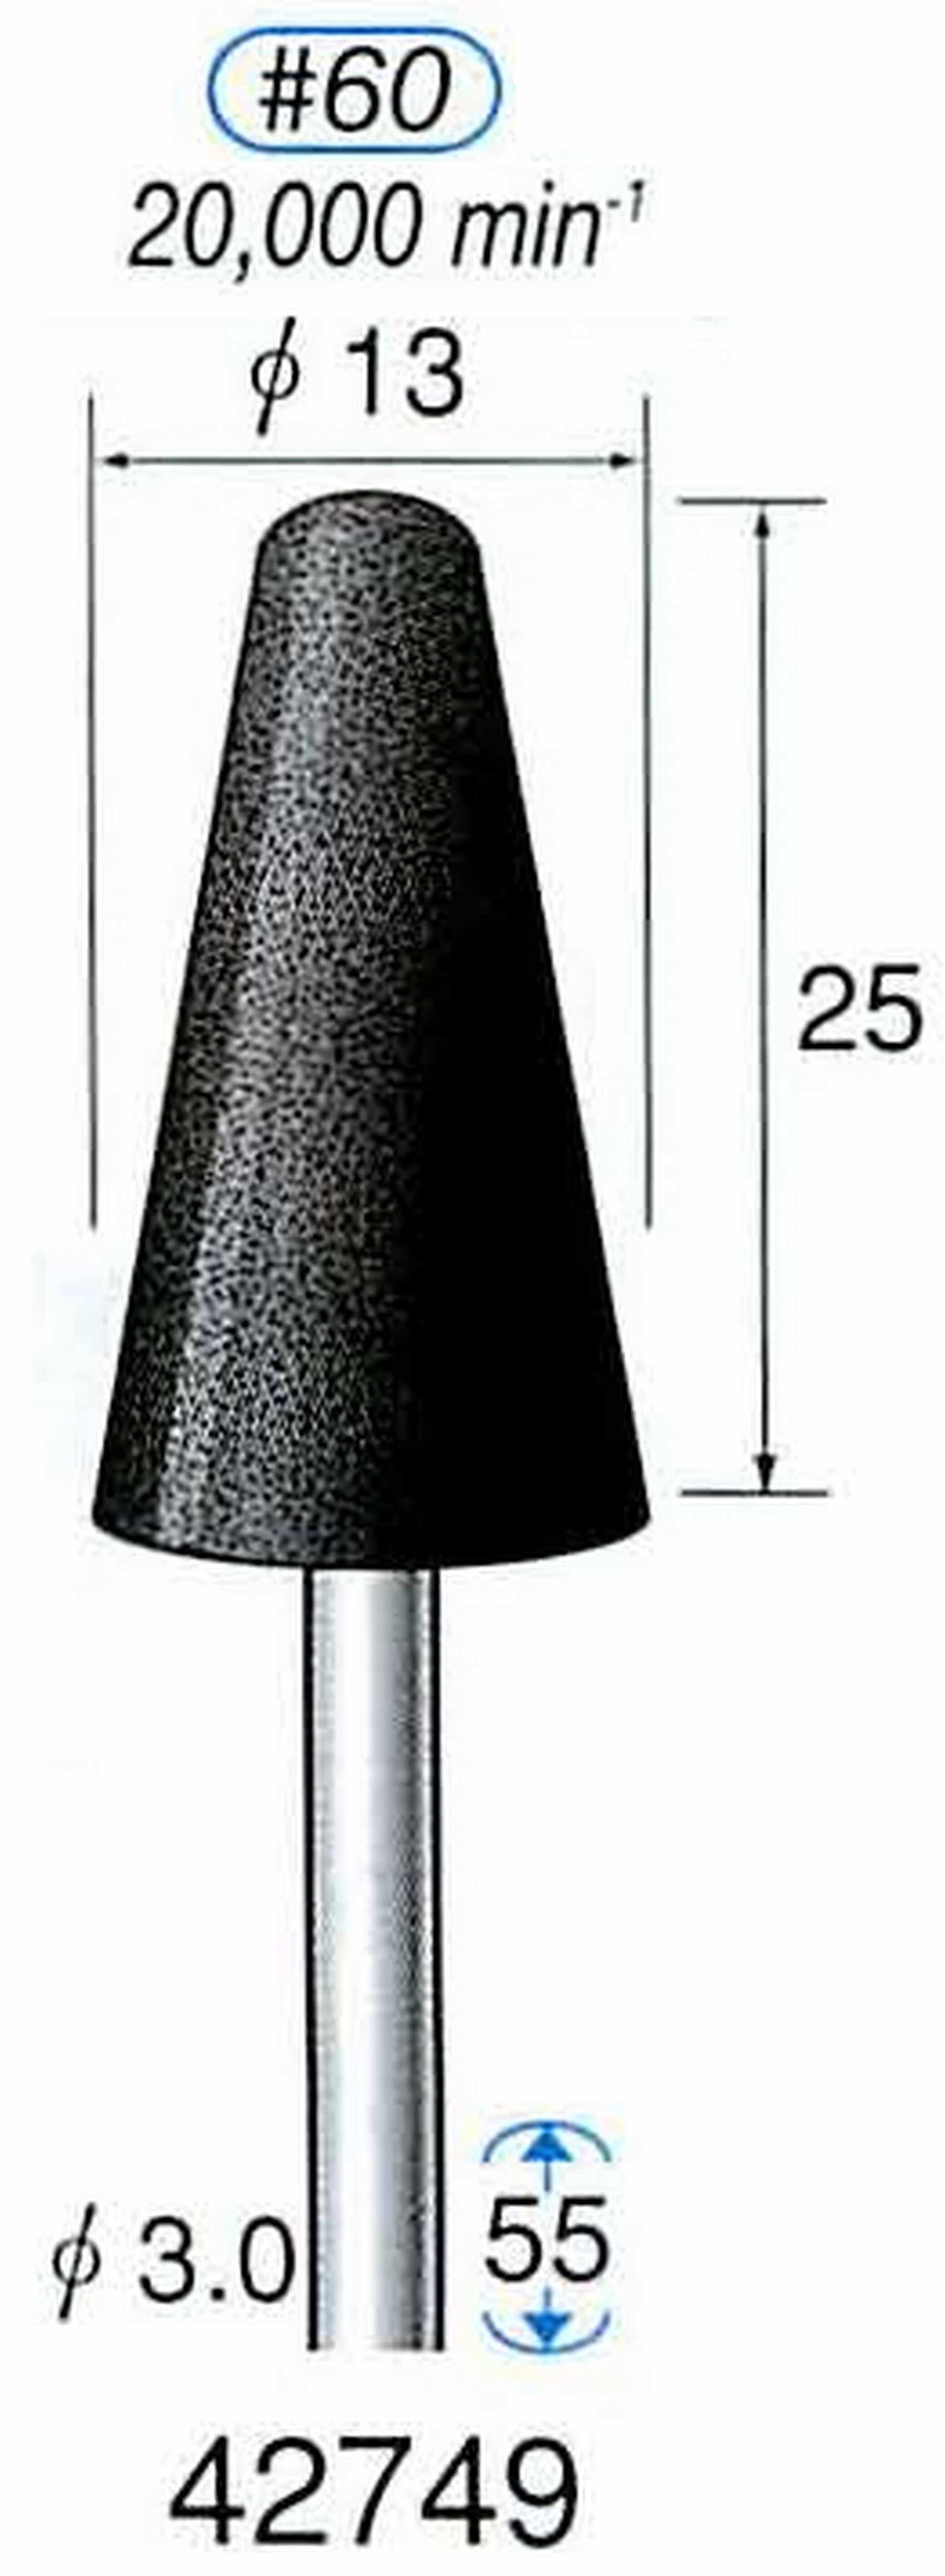 ナカニシ/NAKANISHI 軸付砥石(A砥粒) ブラック砥石 軸径(シャンク) φ3.0mm 42749